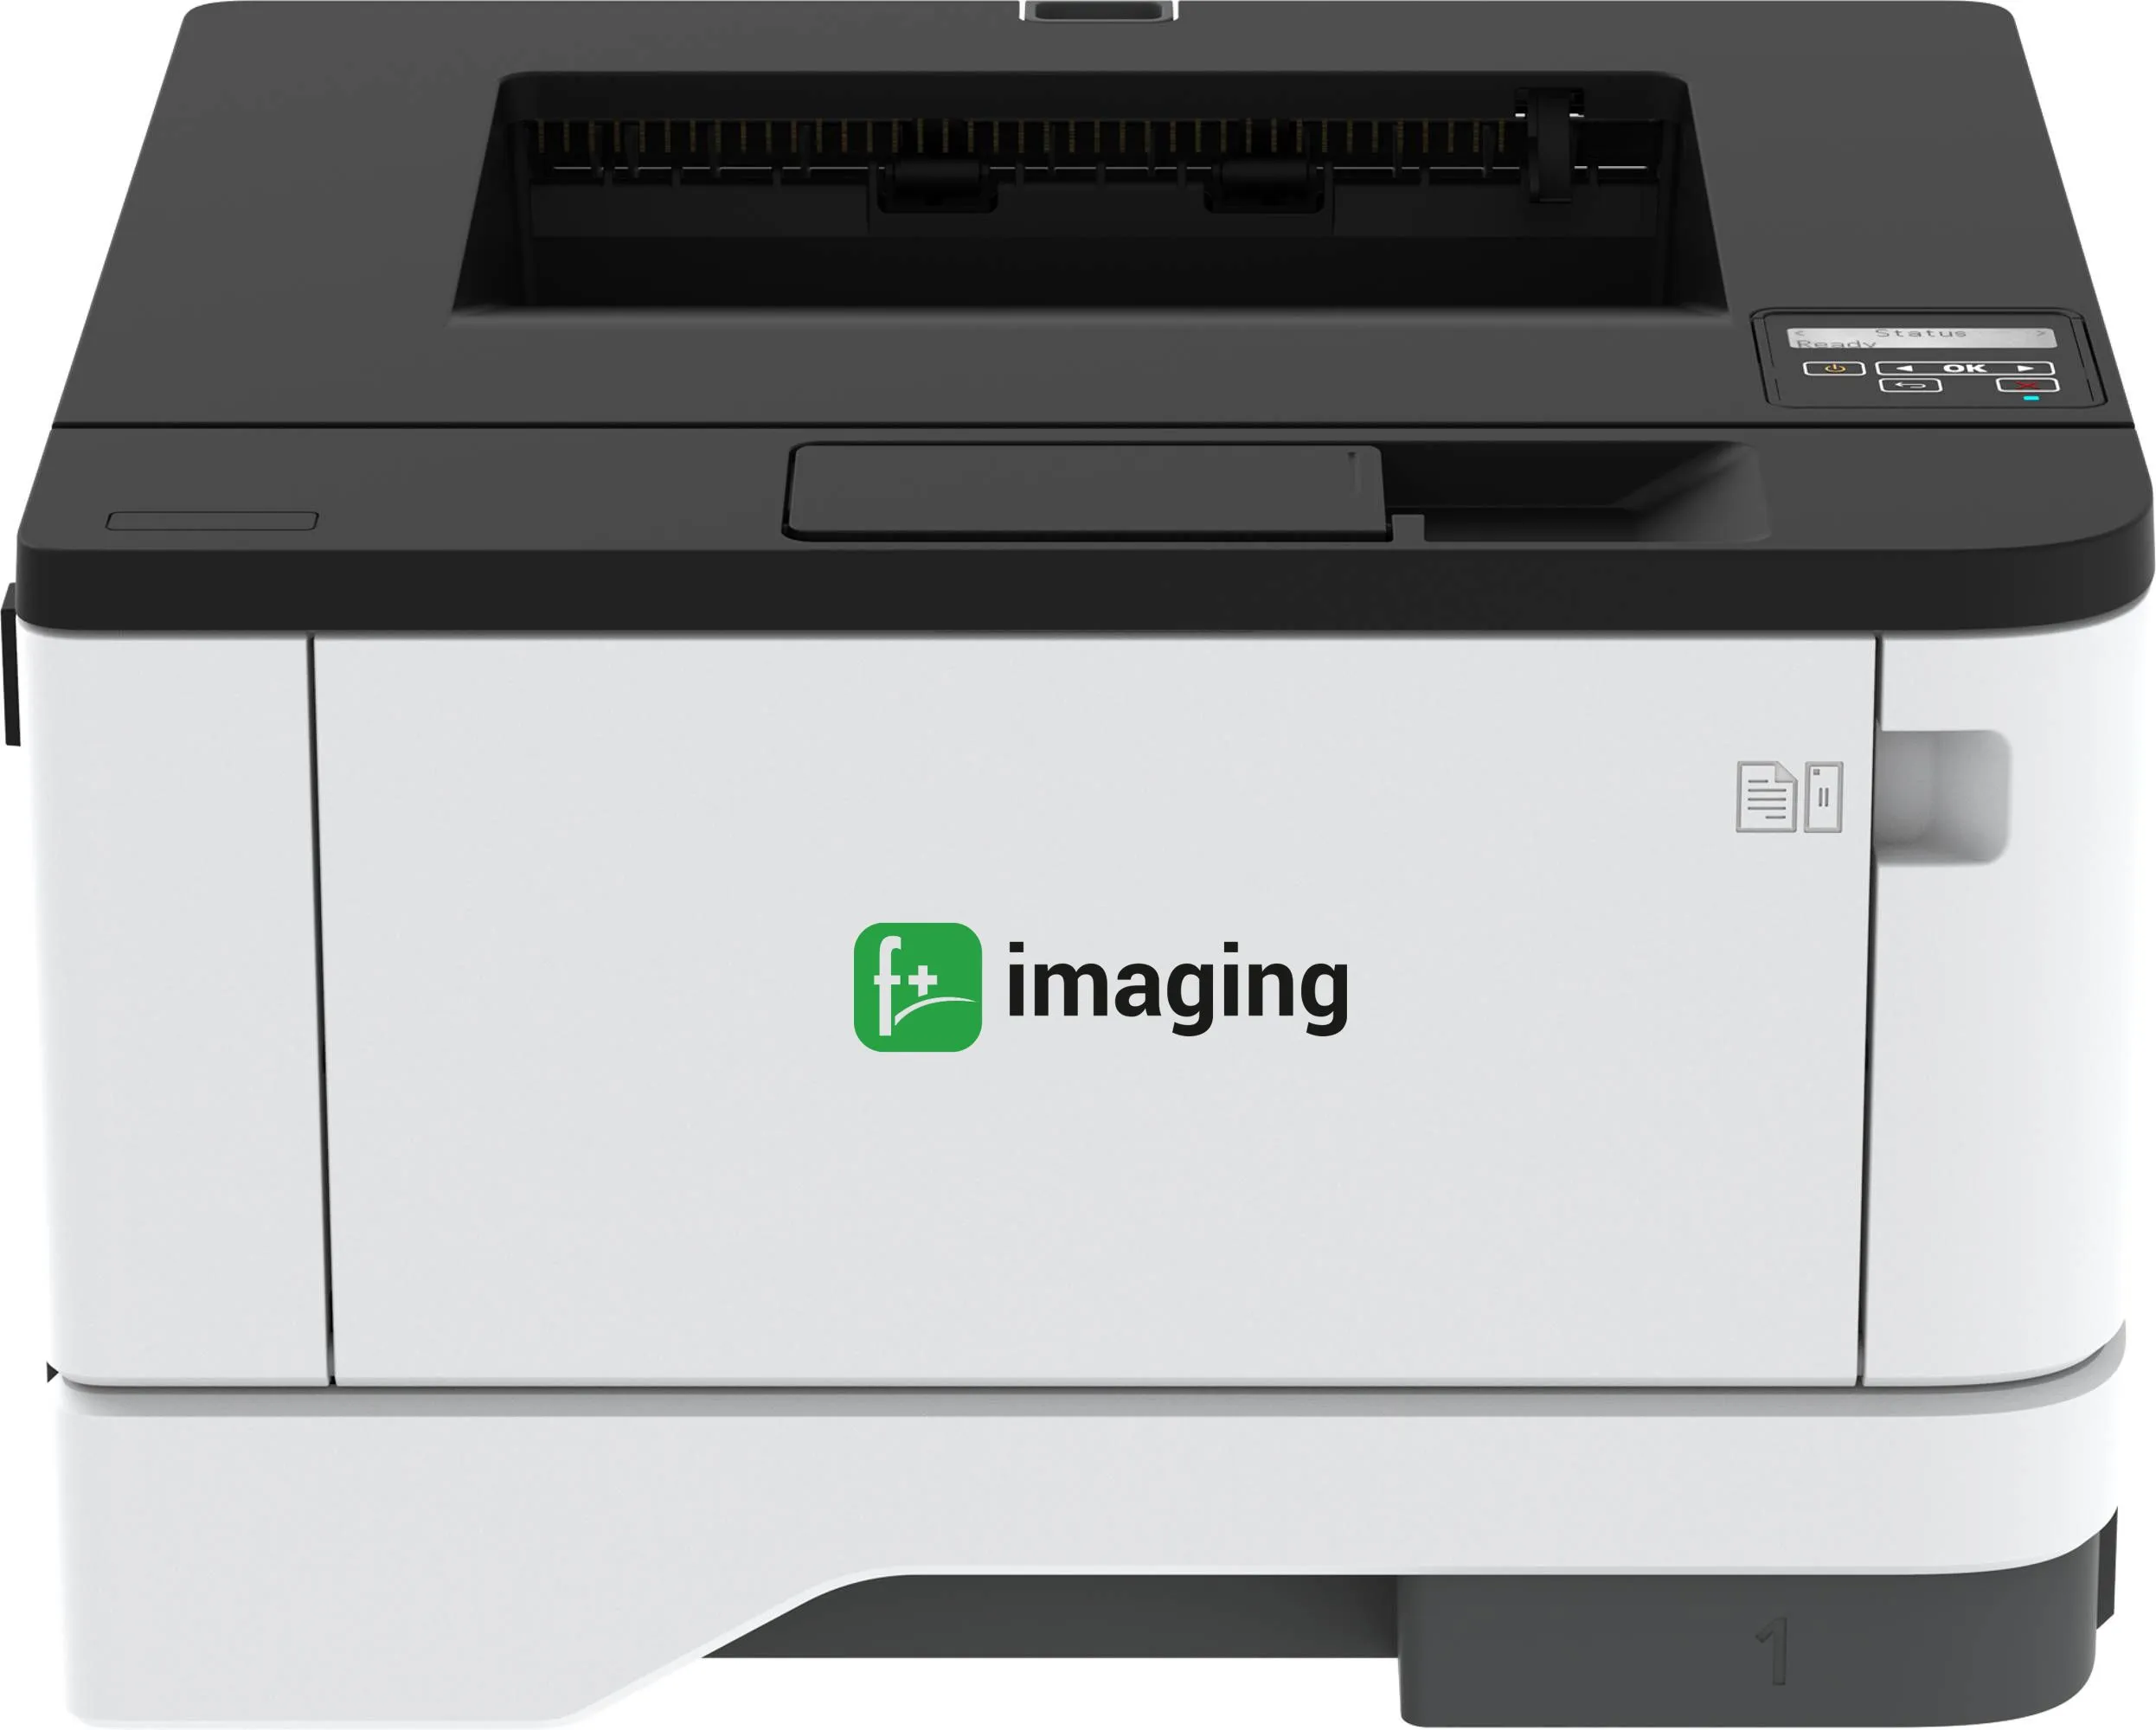 Принтер F+ imaging P40dn6 (А4, ч/б, дуплекс,сеть Gigabit Ethernet,40 стр./мин,картридж на 6000стр)